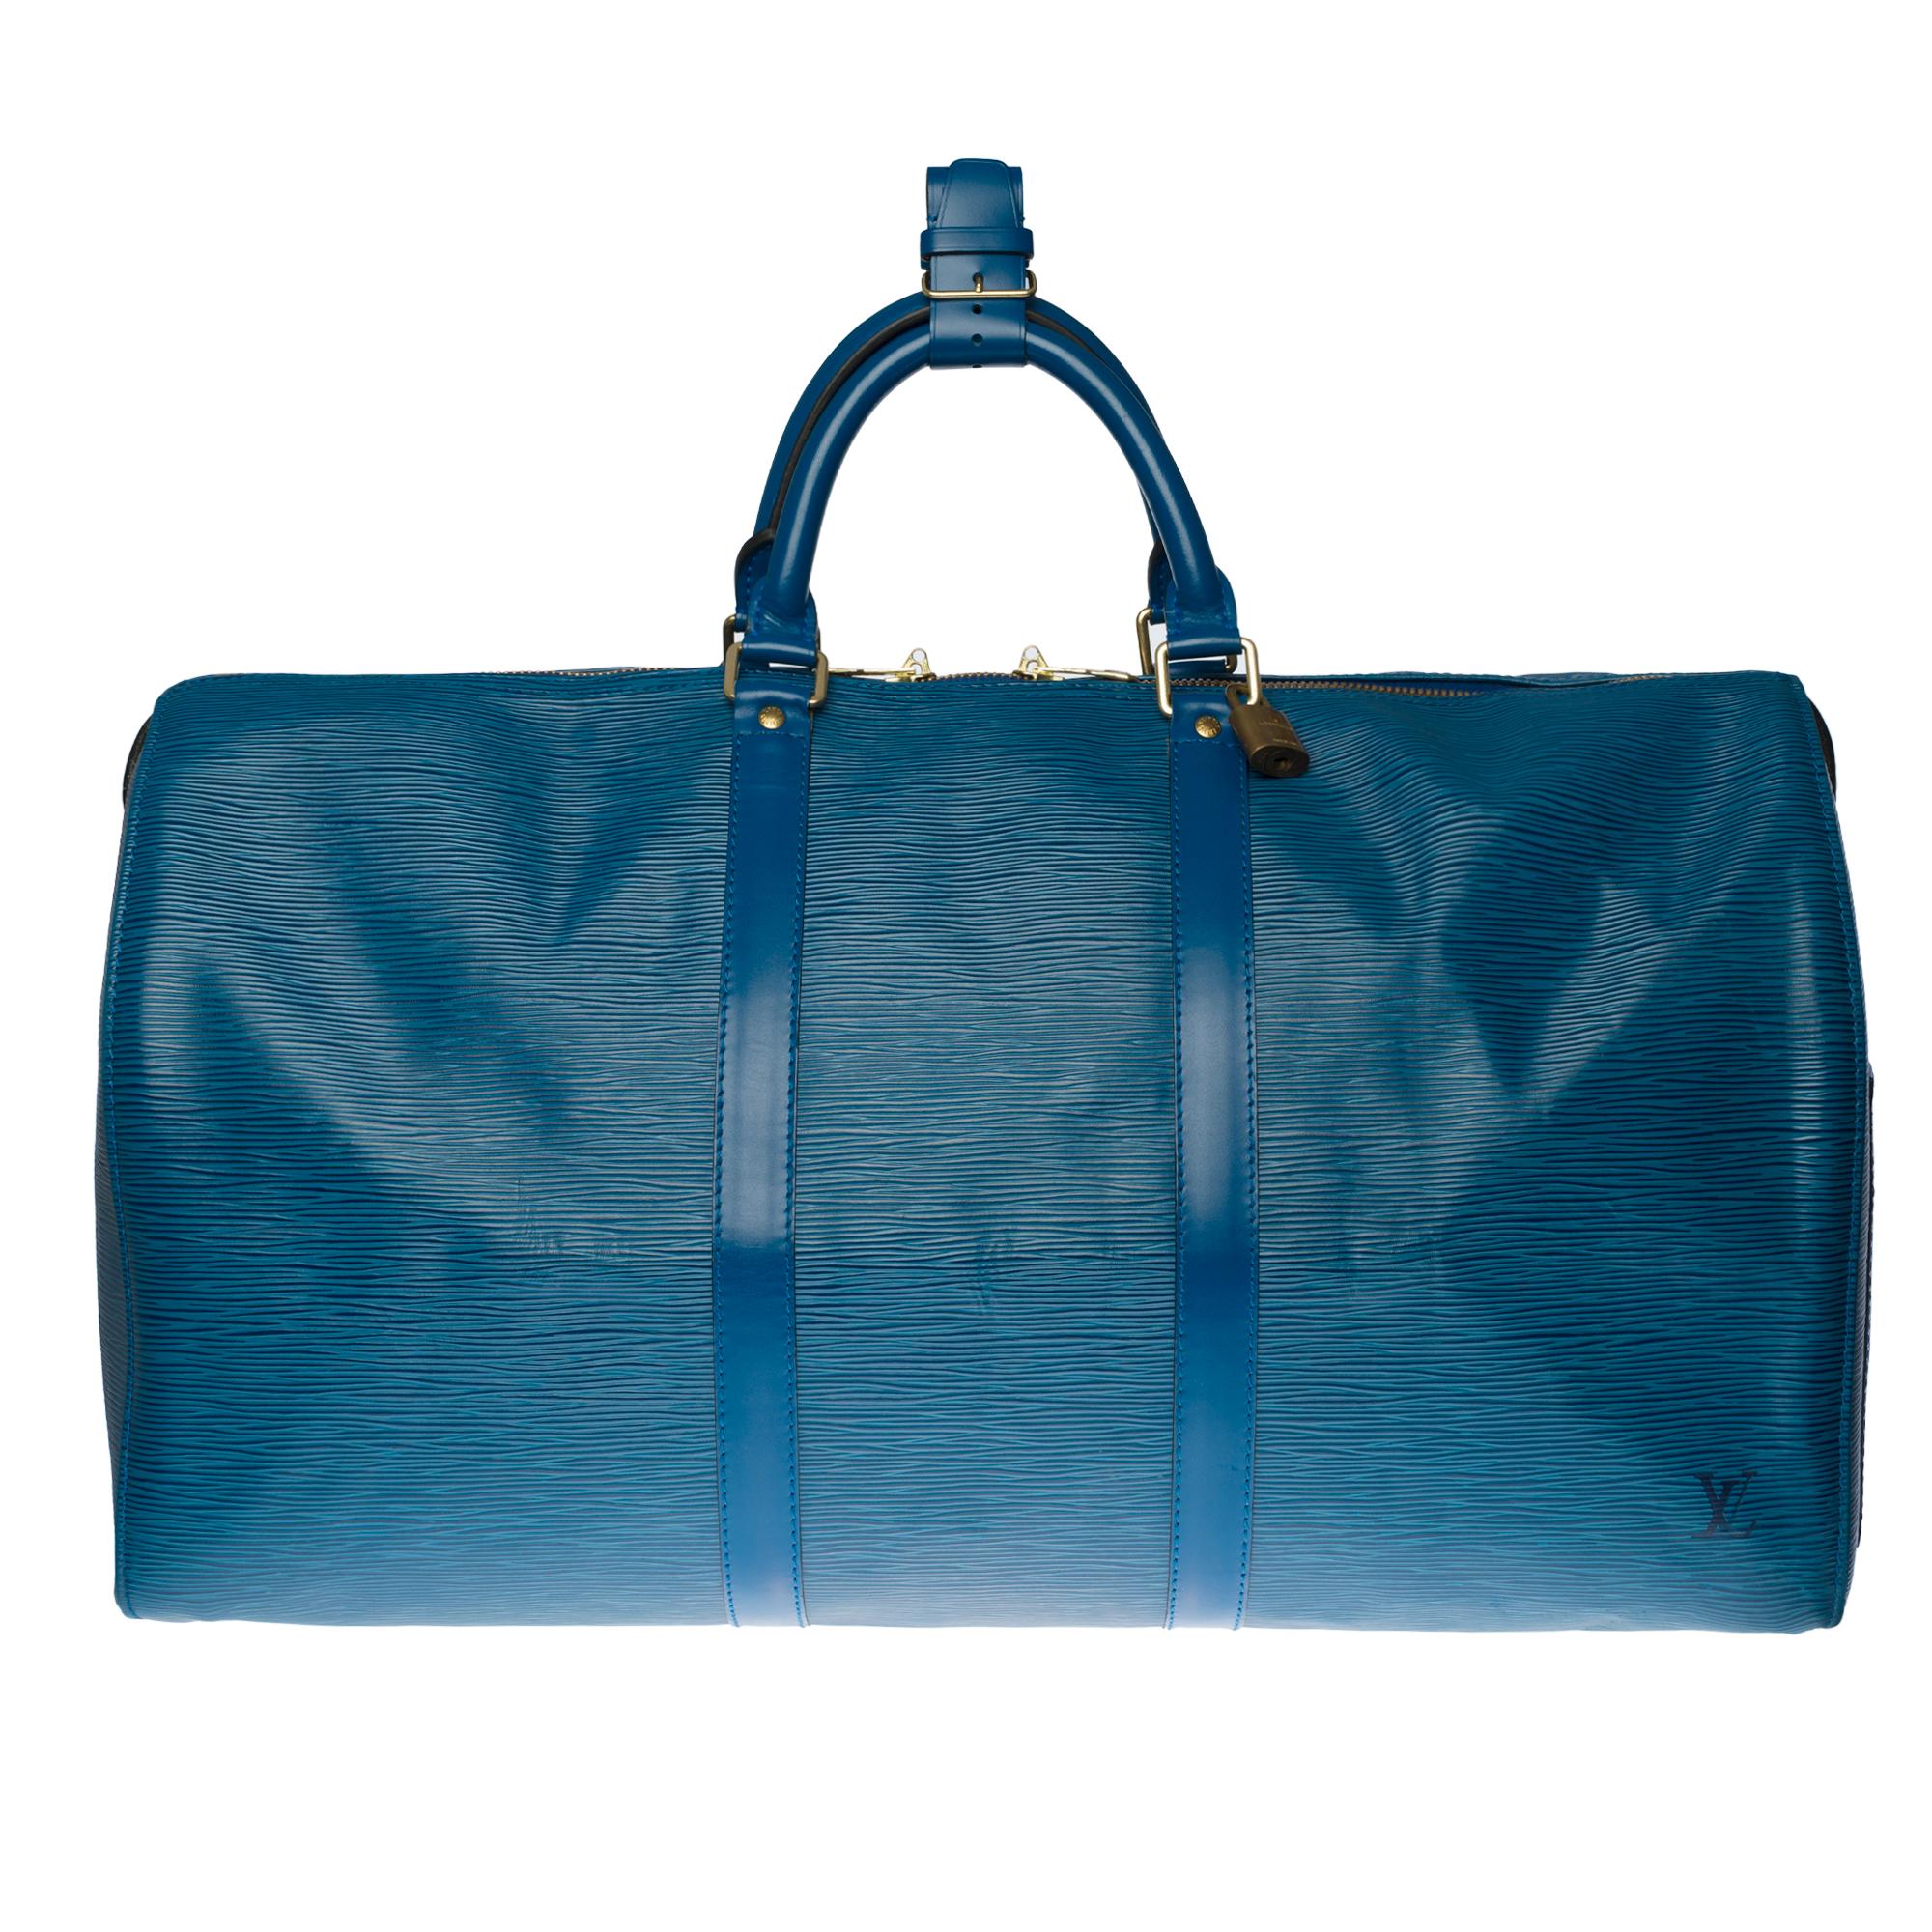 The spacious Louis Vuitton bag 